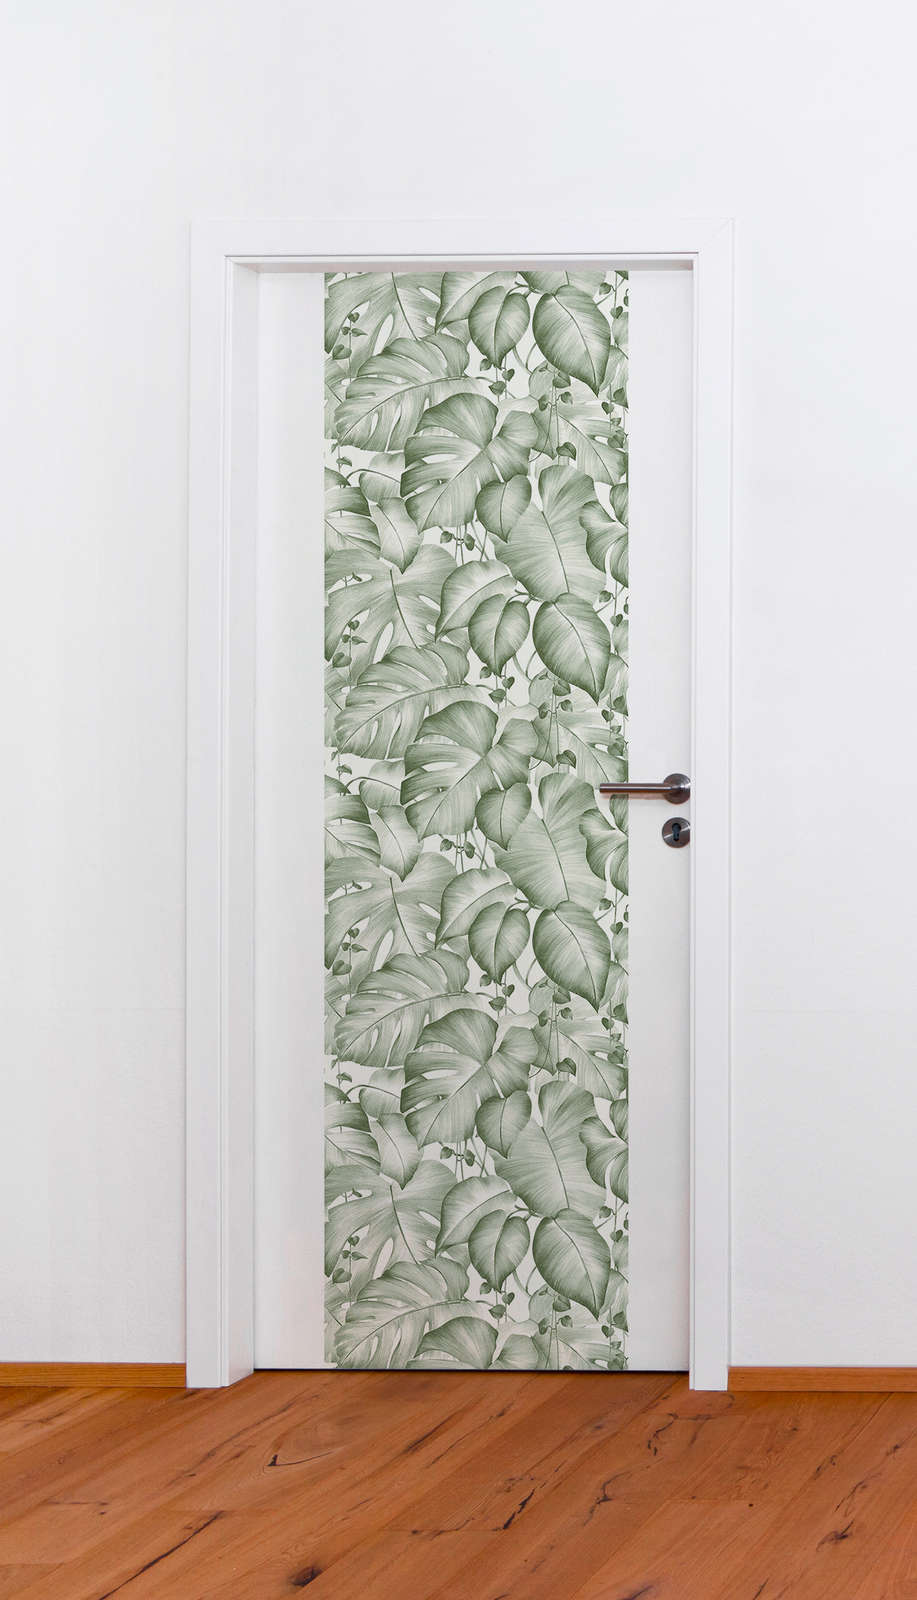             Designpanel selbstklebend mit Monstera Blättern – Grün, Weiß
        